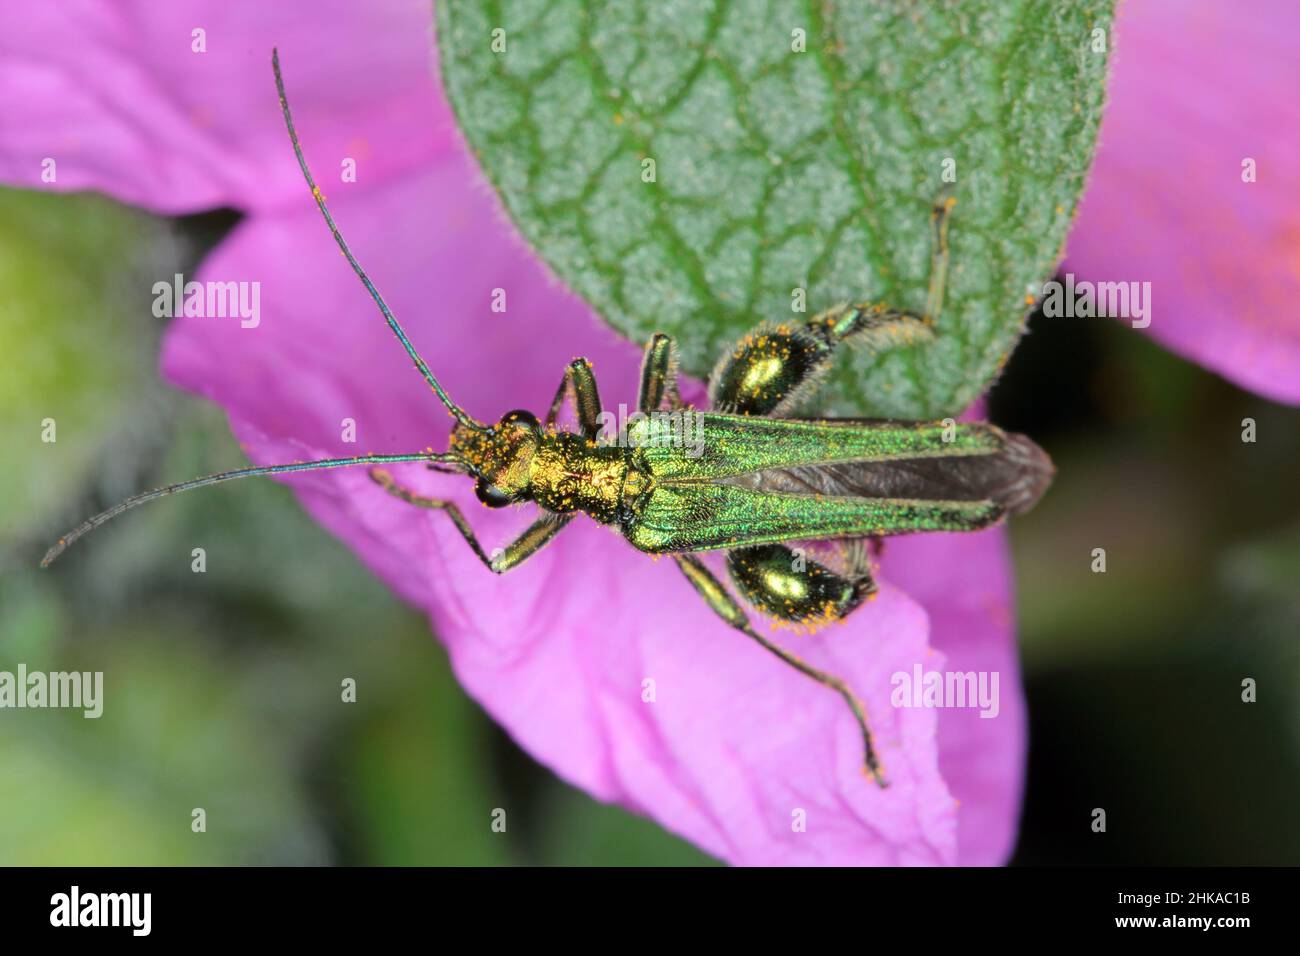 Oedemera nobilis, también conocido como el escarabajo de aceite falso, escarabajo de flor de patas gruesas o escarabajo hinchado, familia Oedemeridae, una especie común. Foto de stock